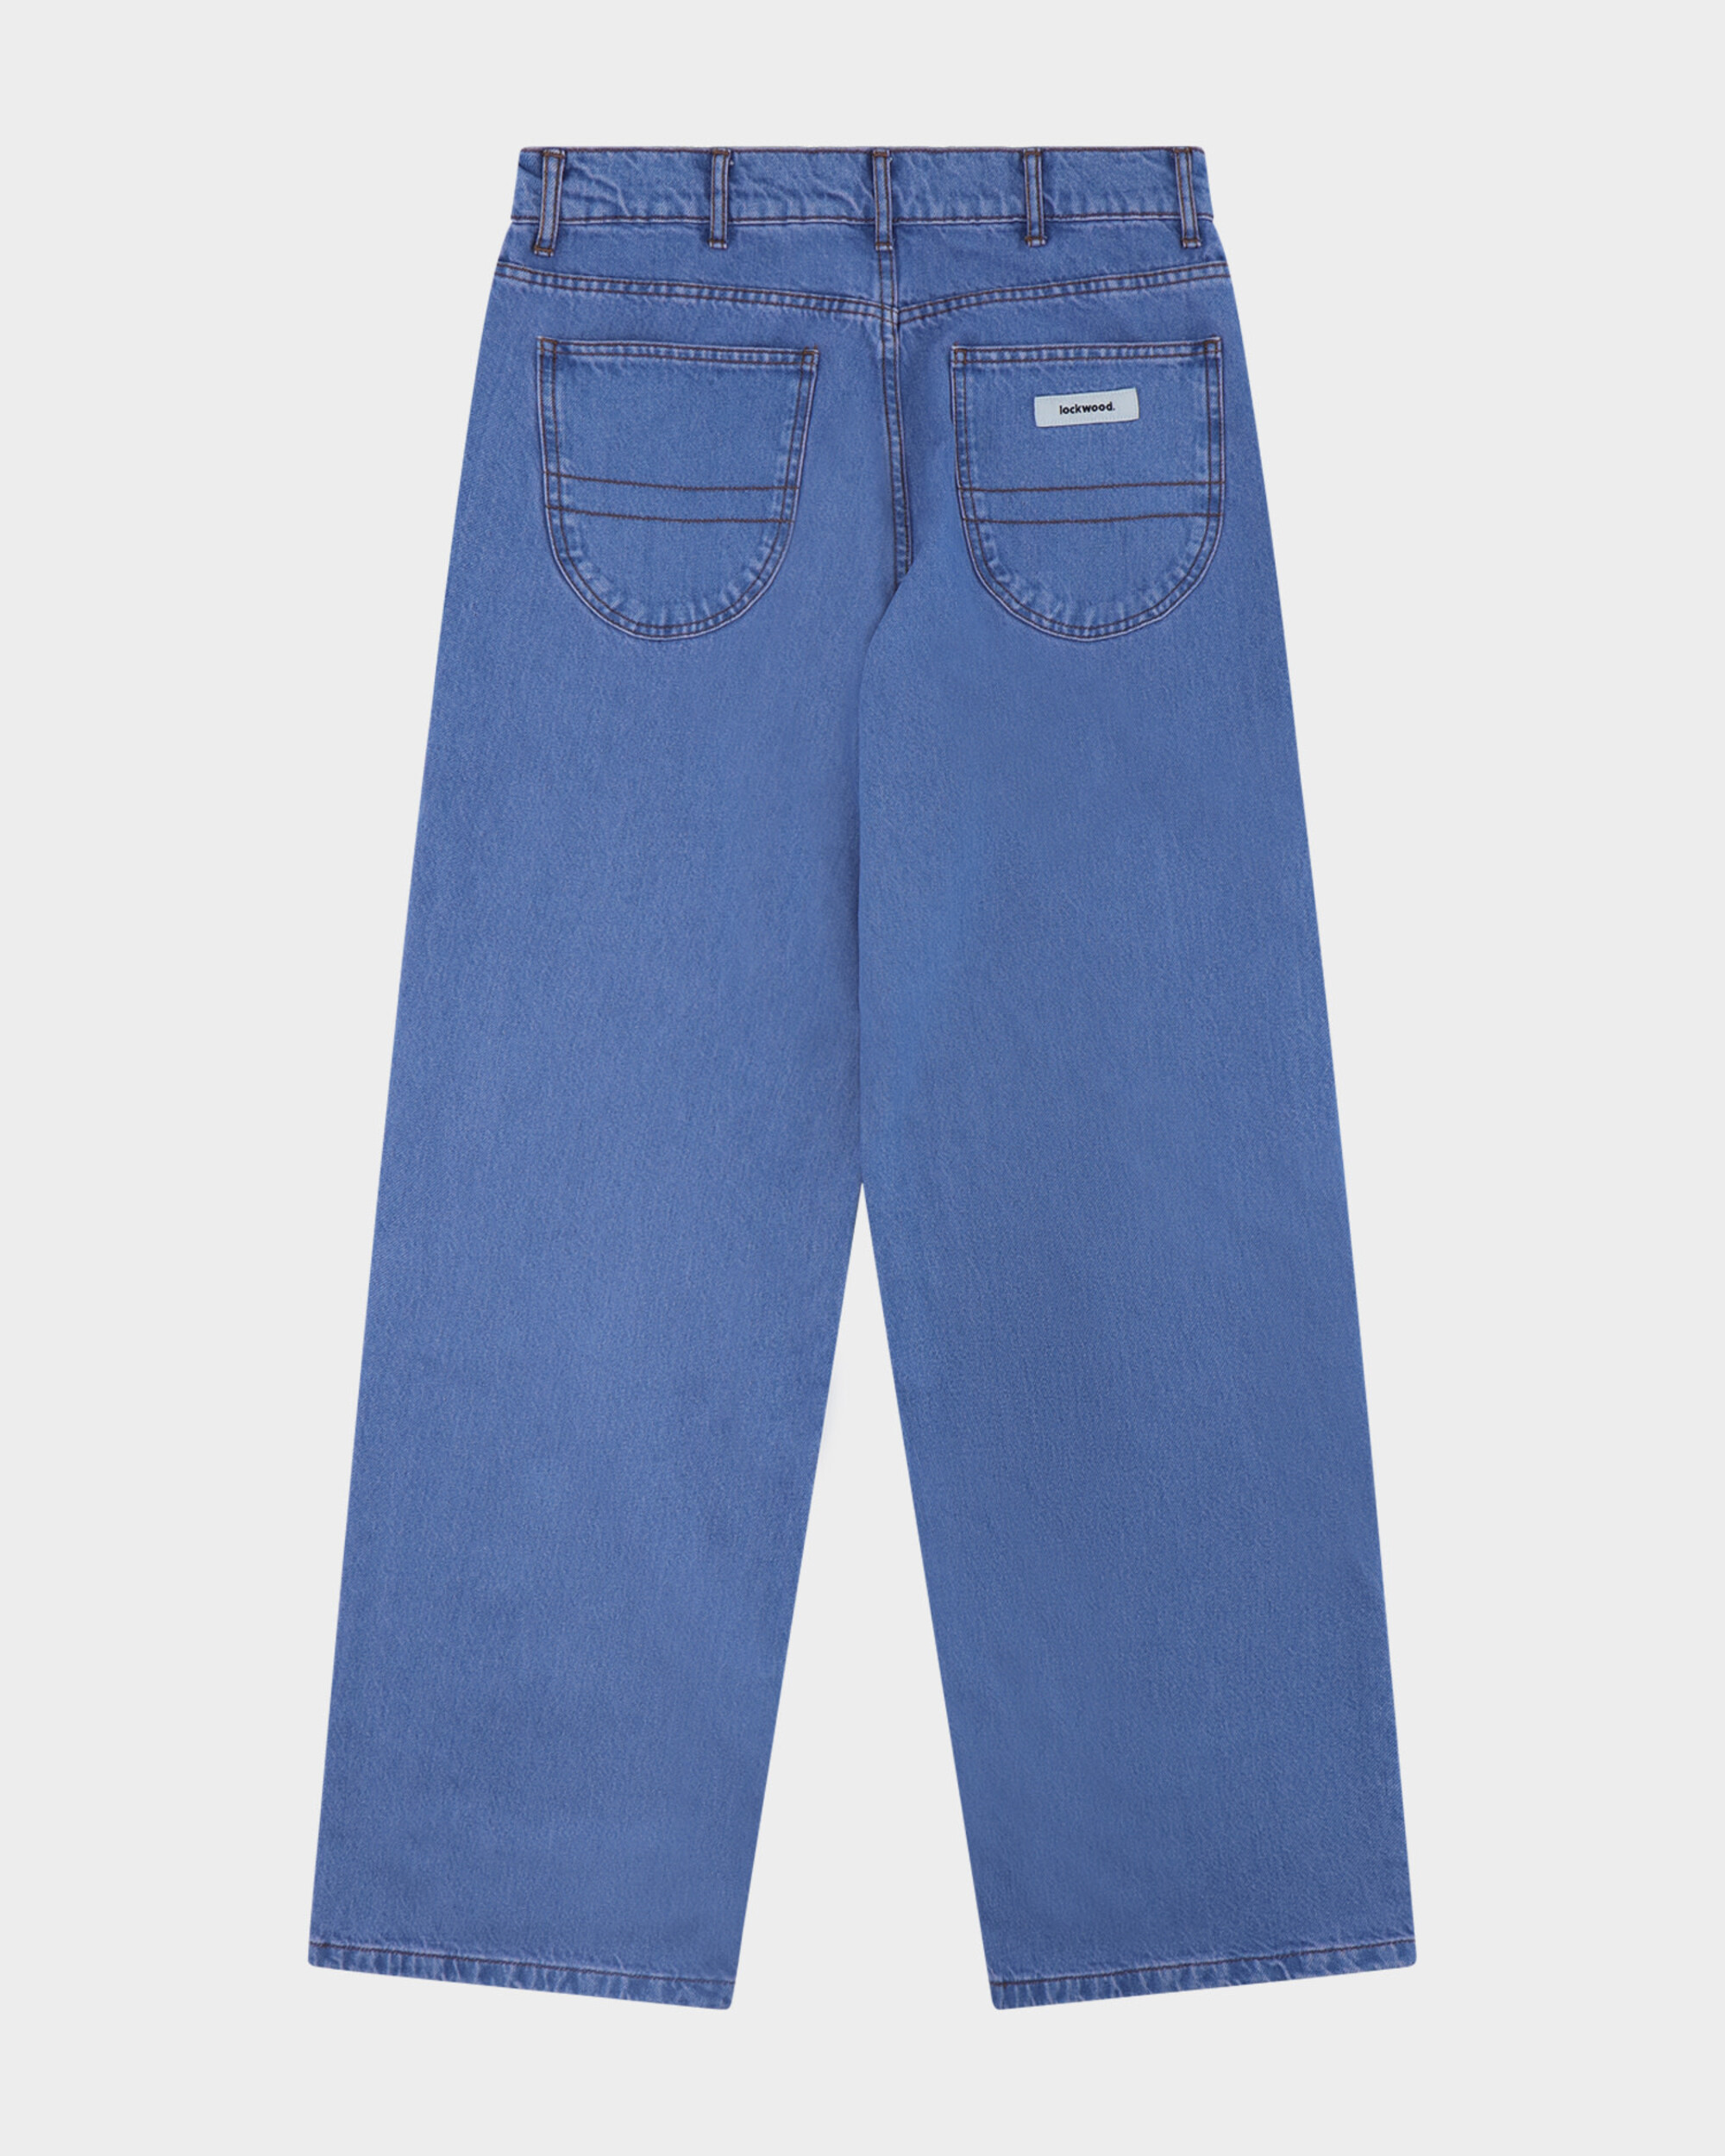 Lockwood Straight Baggy Jeans - Sad Blue